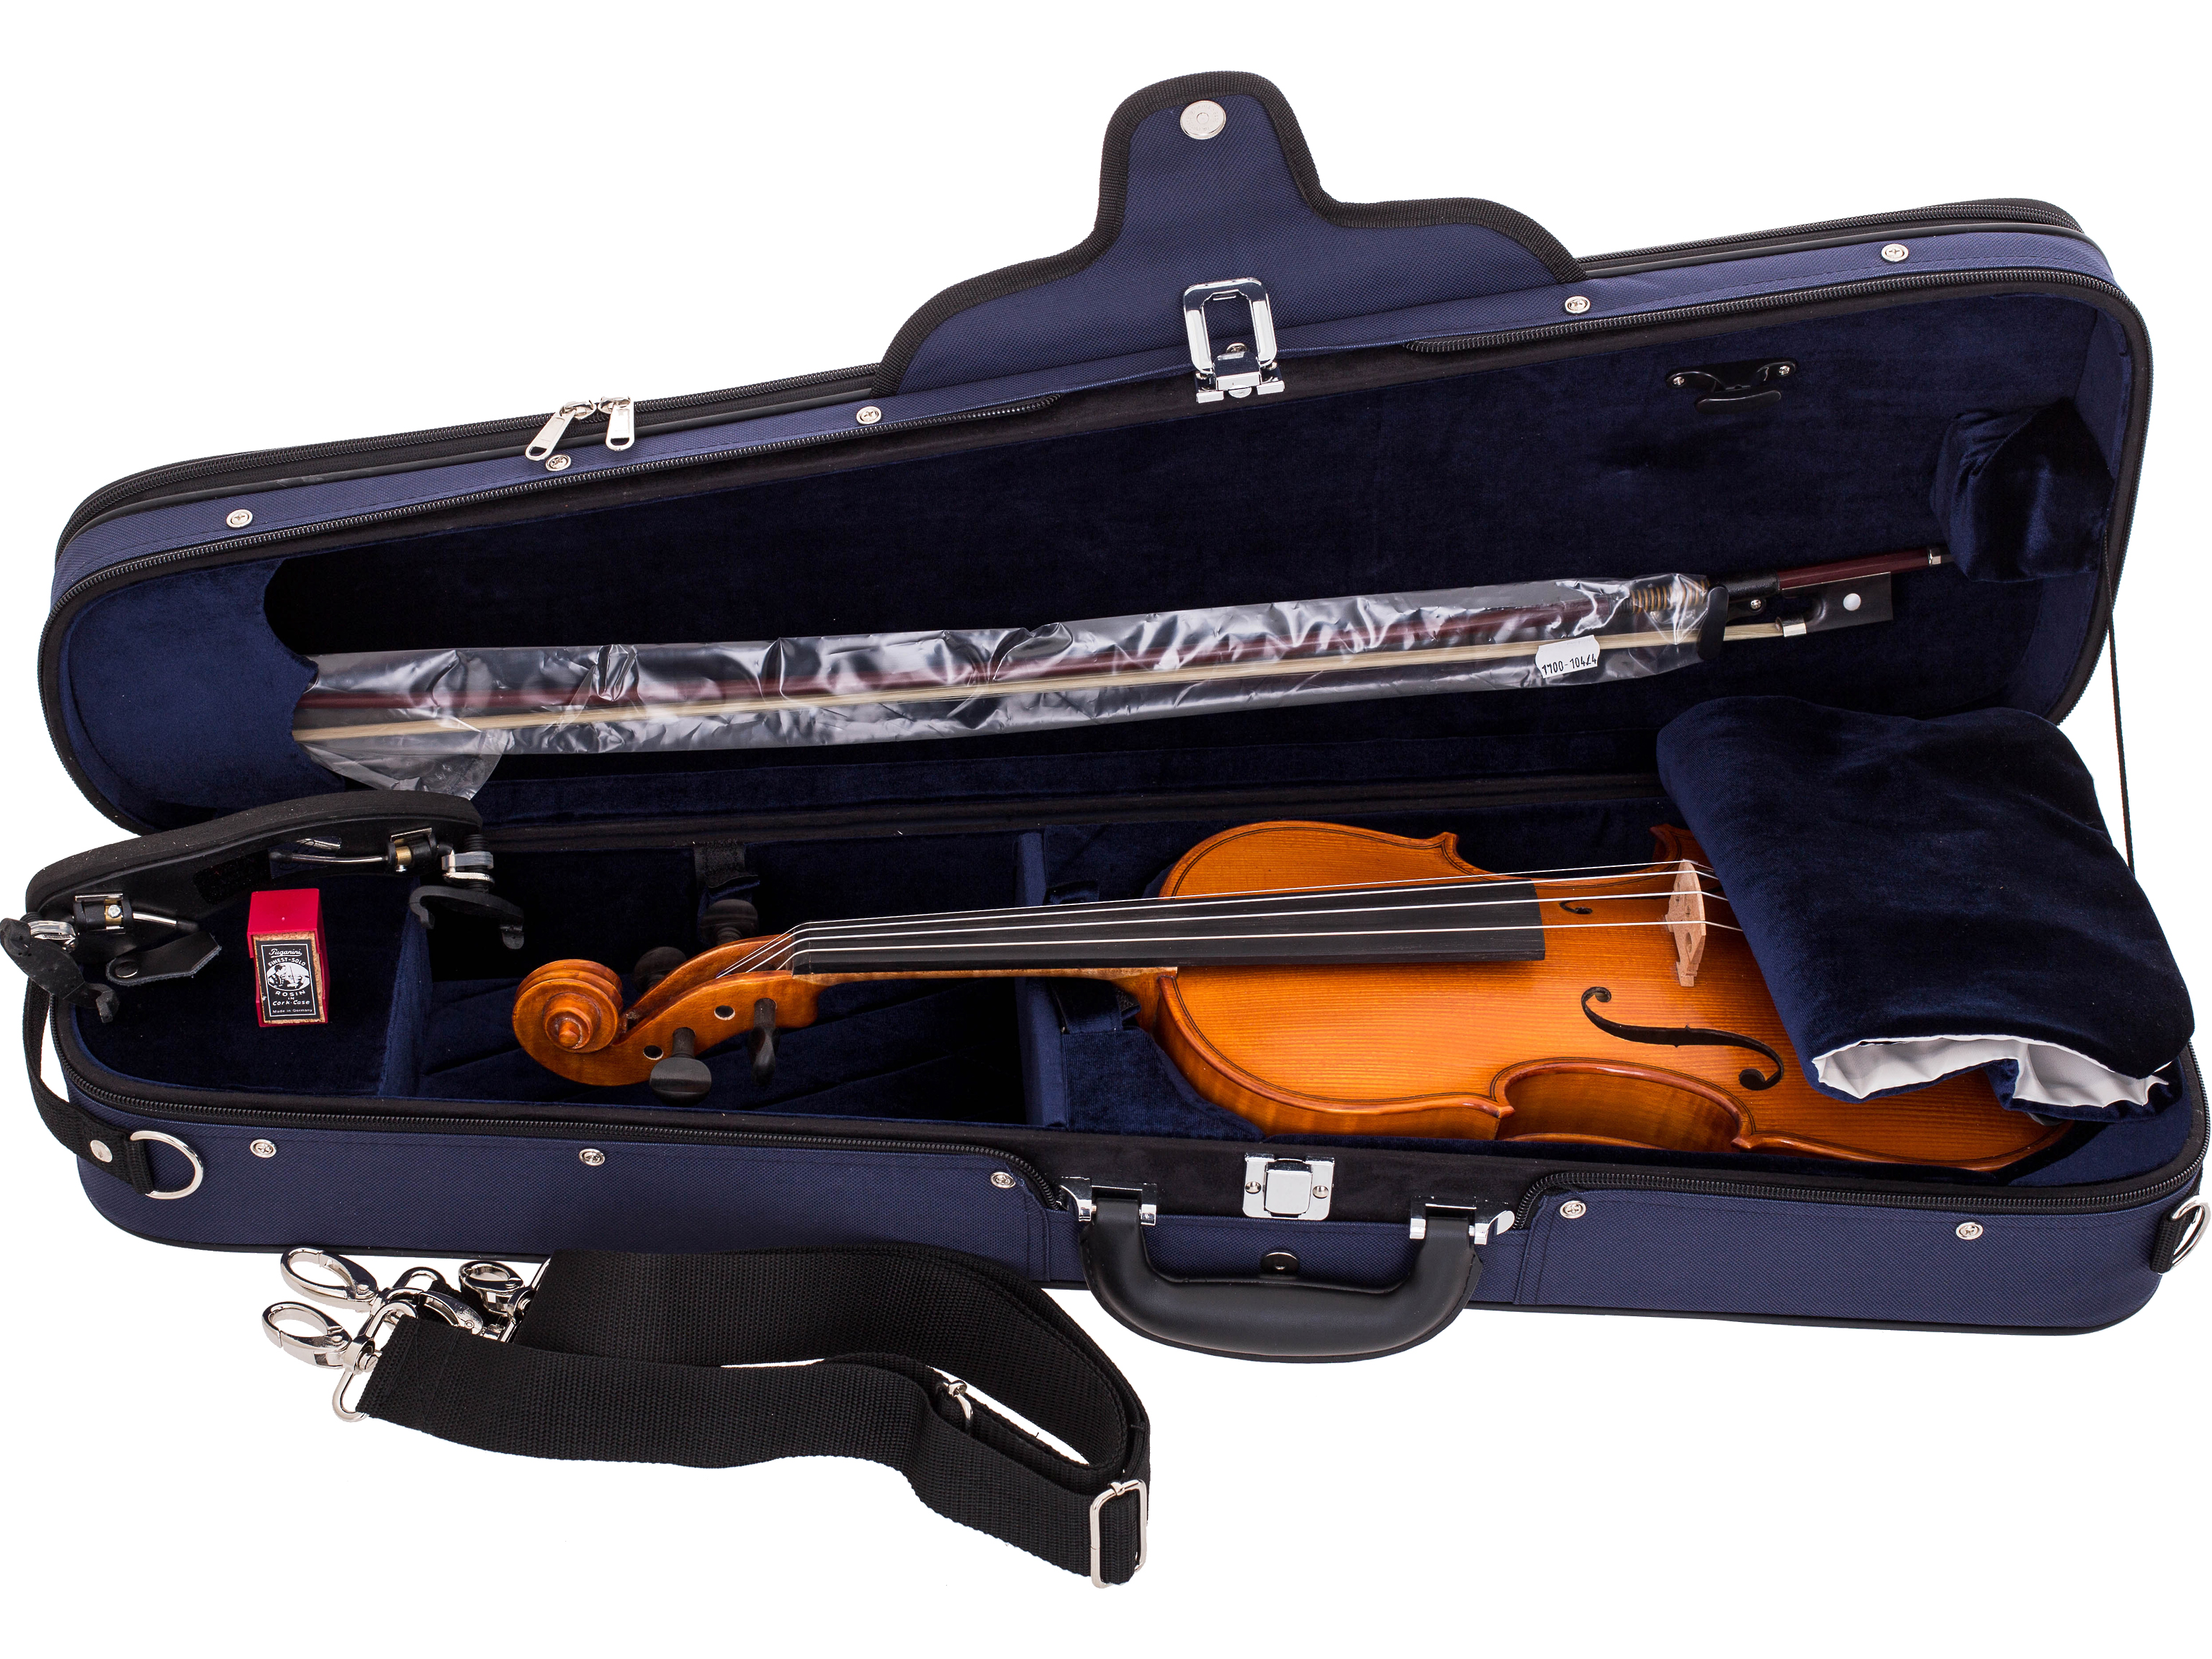 Sandner 8120 Violin-Set 3/4 Alosa